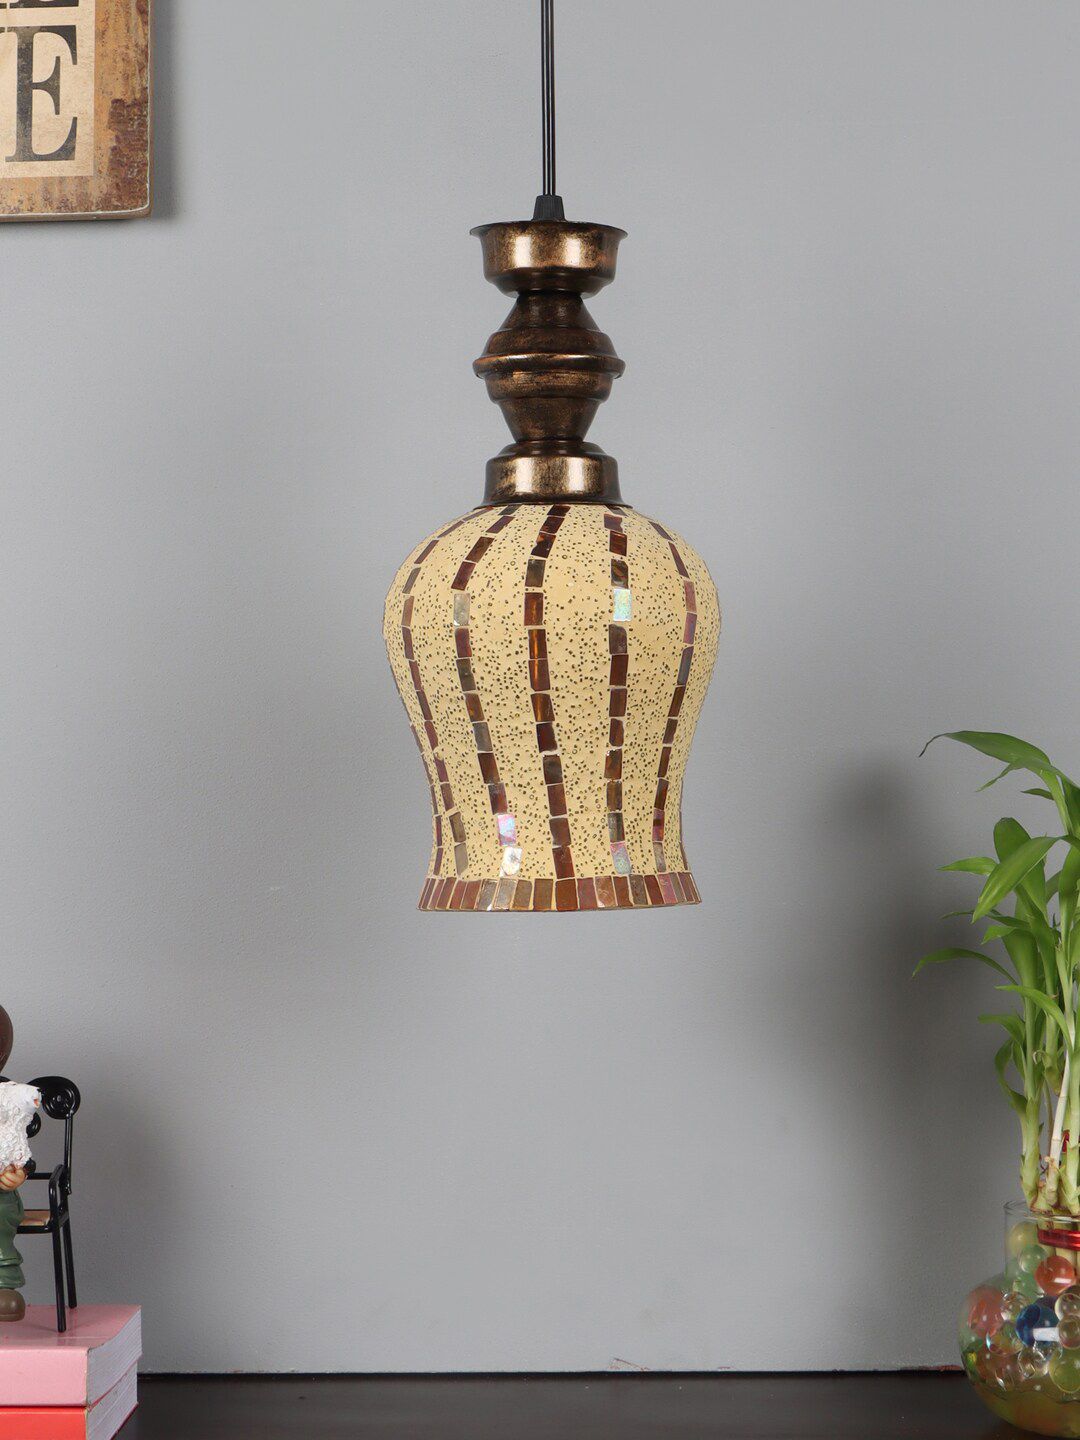 foziq Black Printed Metal Ceiling Pendant Lamp Price in India